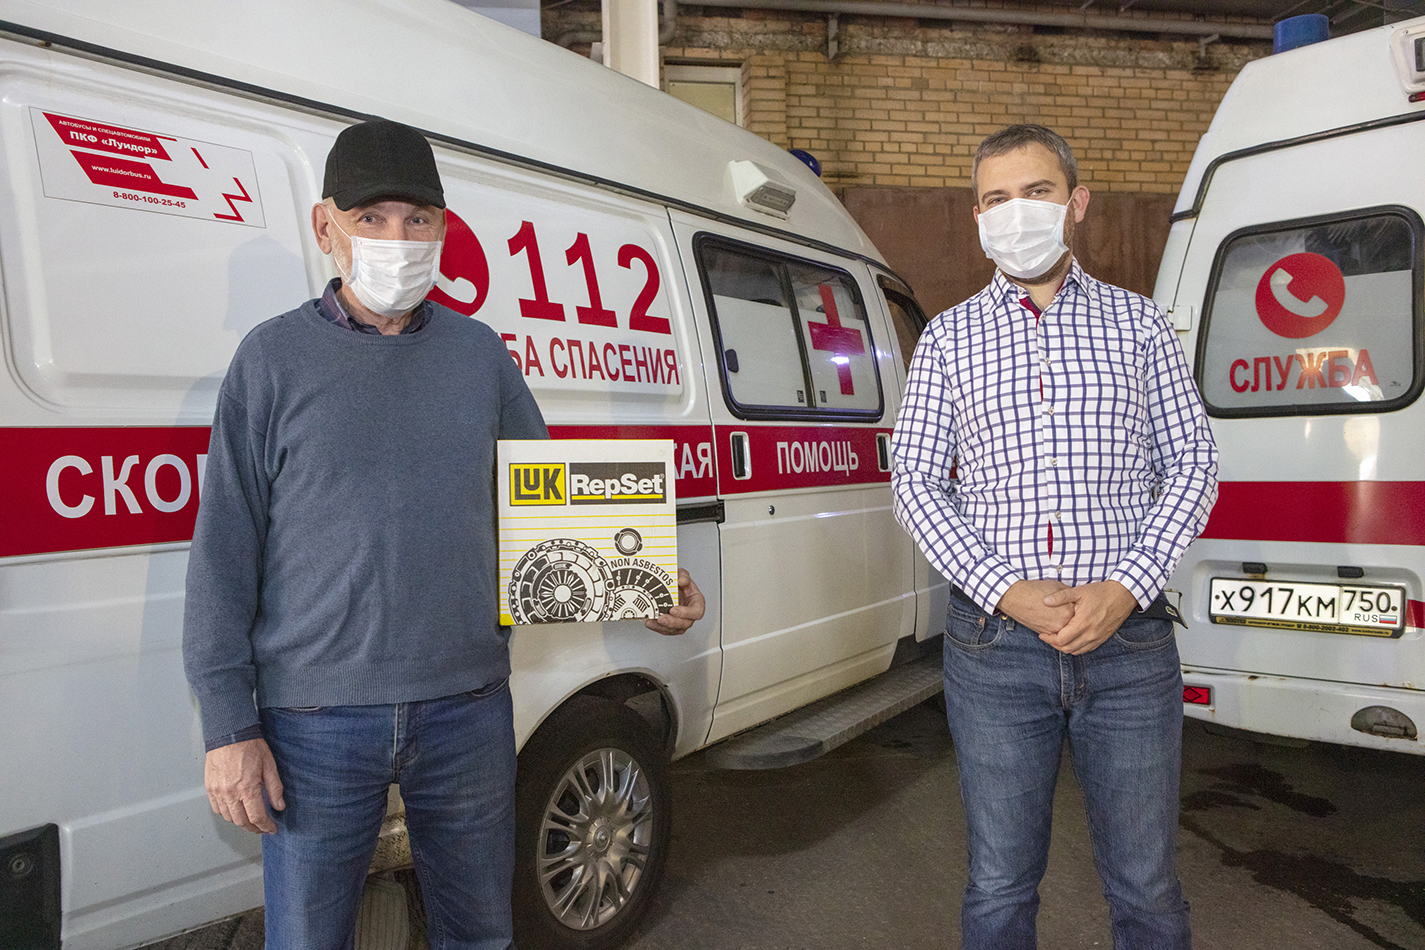 Компания Schaeffler поддерживает местную станцию скорой помощи в борьбе с коронавирусом